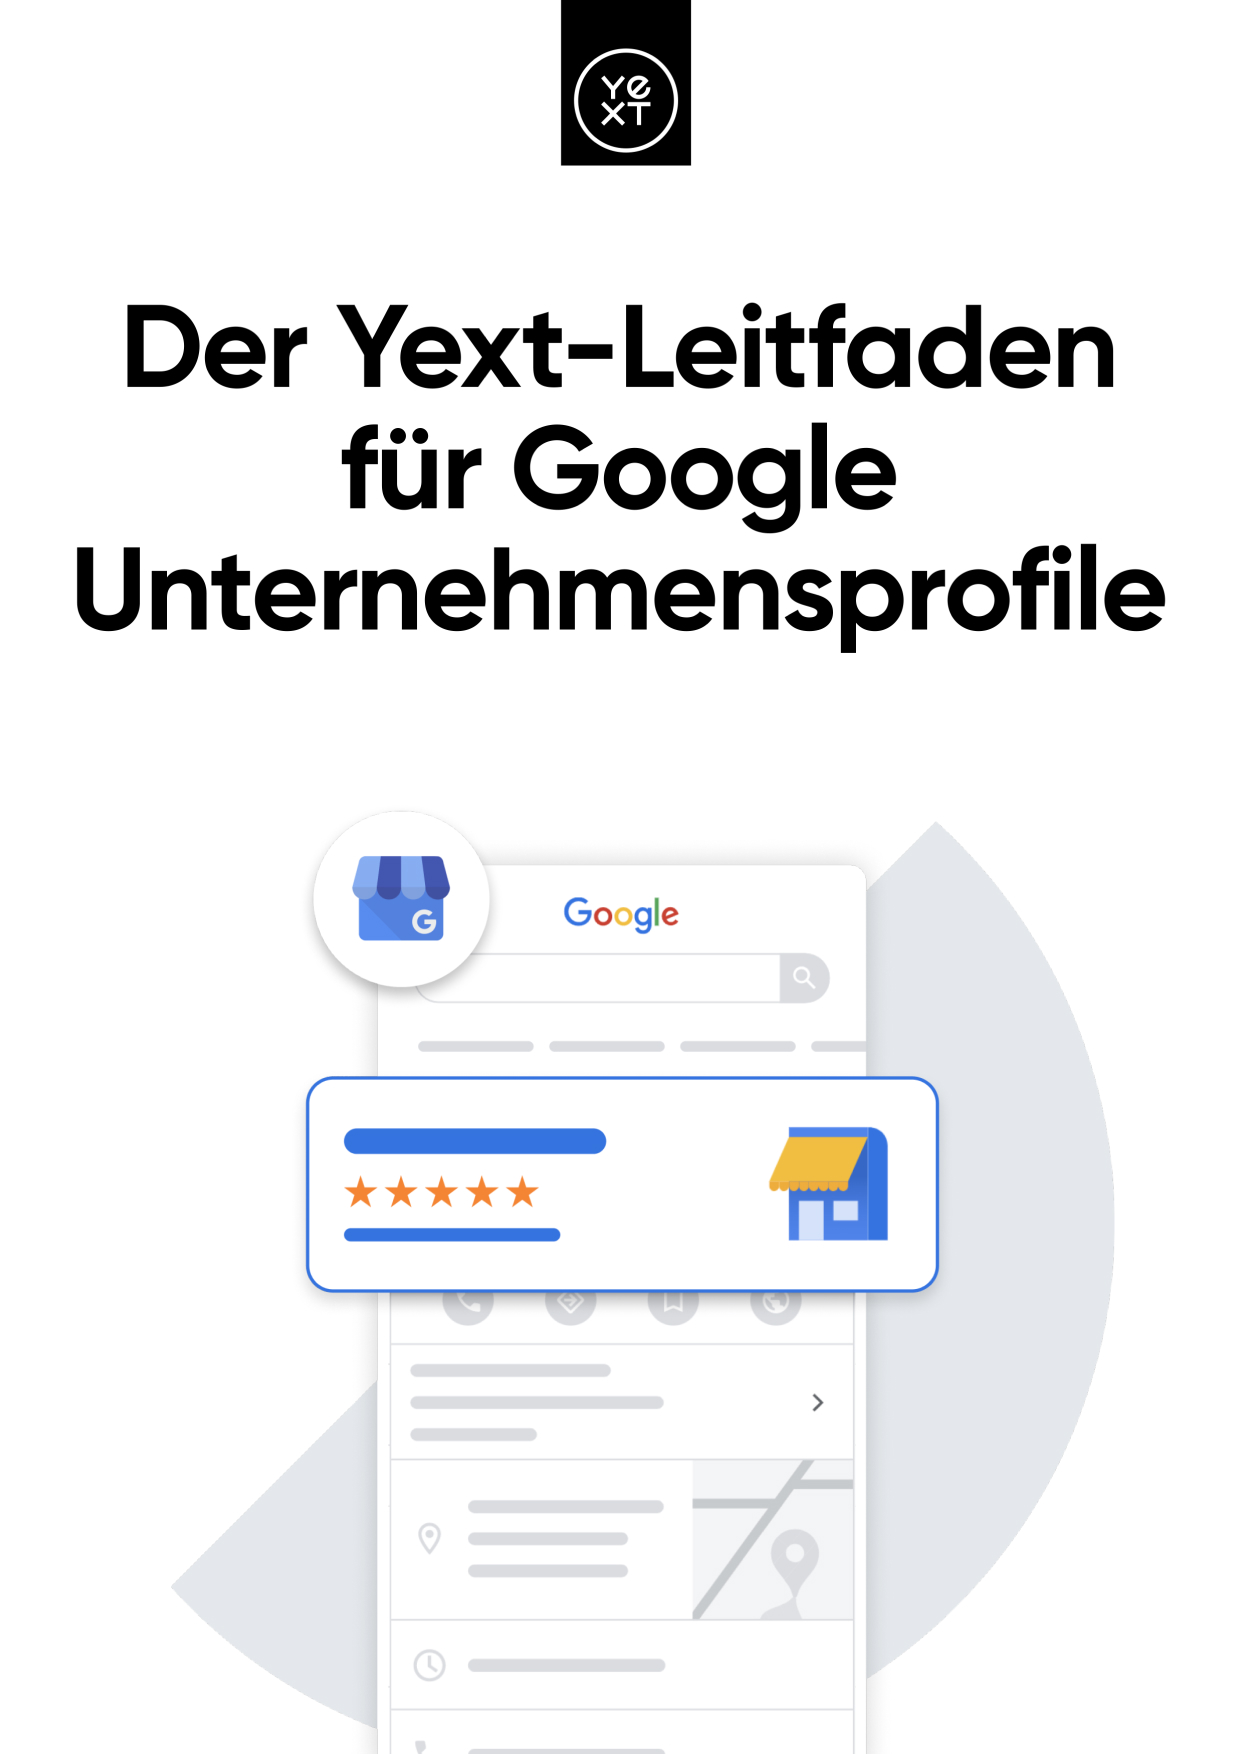 Der Yext-Leitfaden für Google Unternehmensprofile 